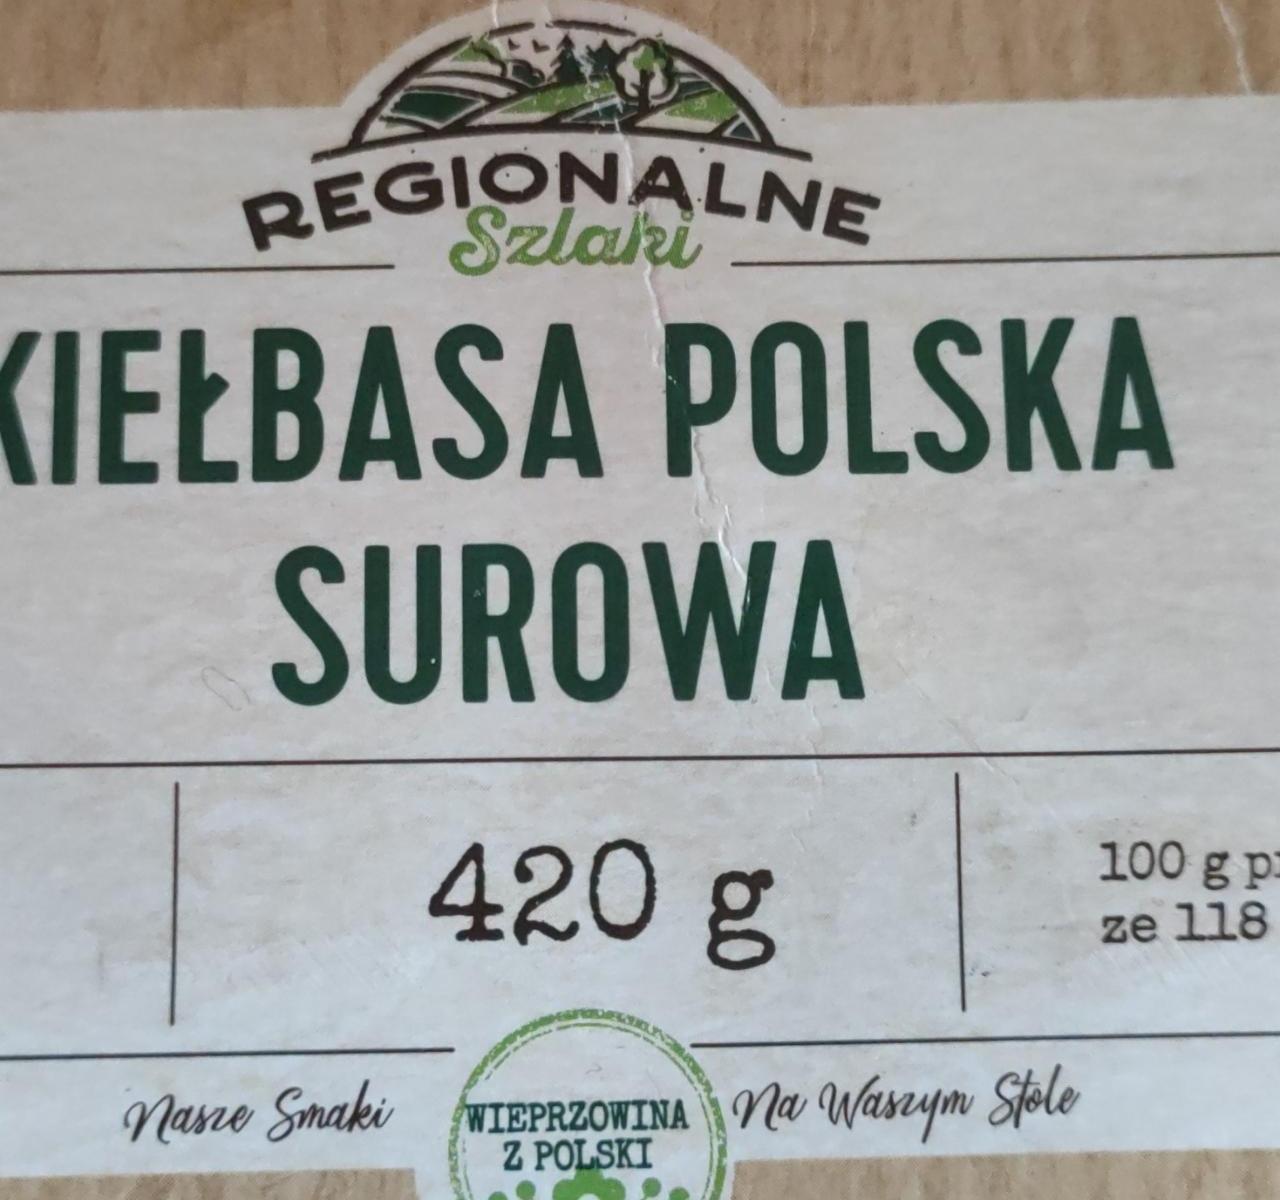 Zdjęcia - Kiełbasa polska surowa Regionalne szlaki